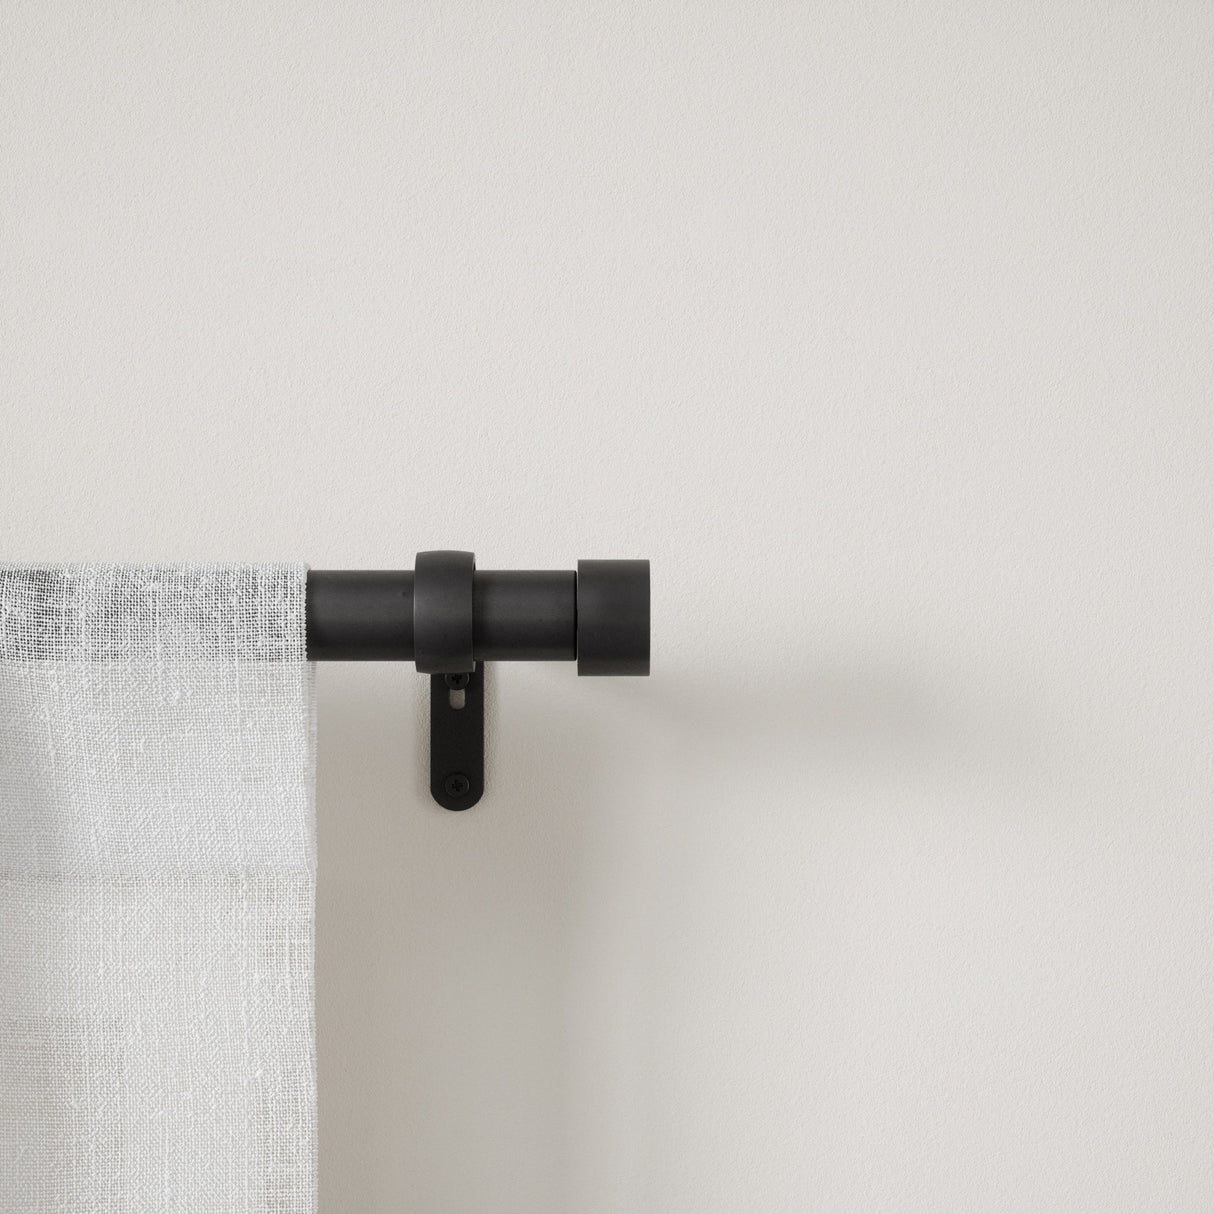 Single Curtain Rods | color: Matte-Black | size: 36-66" (91-168 cm) | diameter: 1" (2.5 cm) | Hover